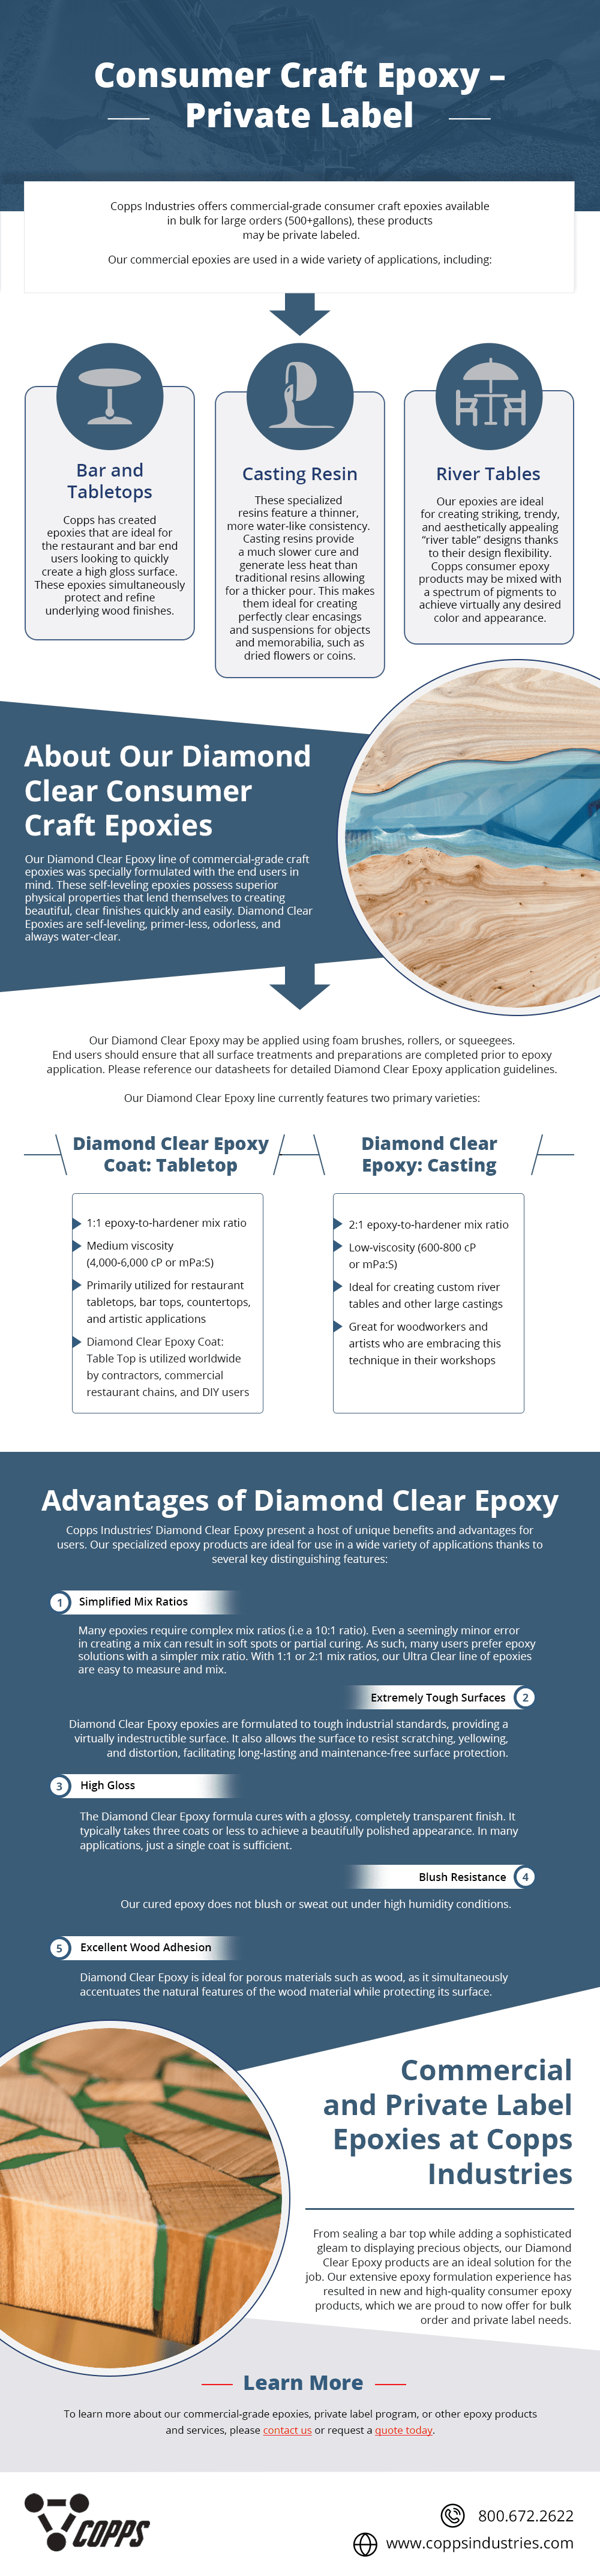 Diamond Clear Epoxy 101: Table Top Epoxy vs. Casting Epoxy - Copps